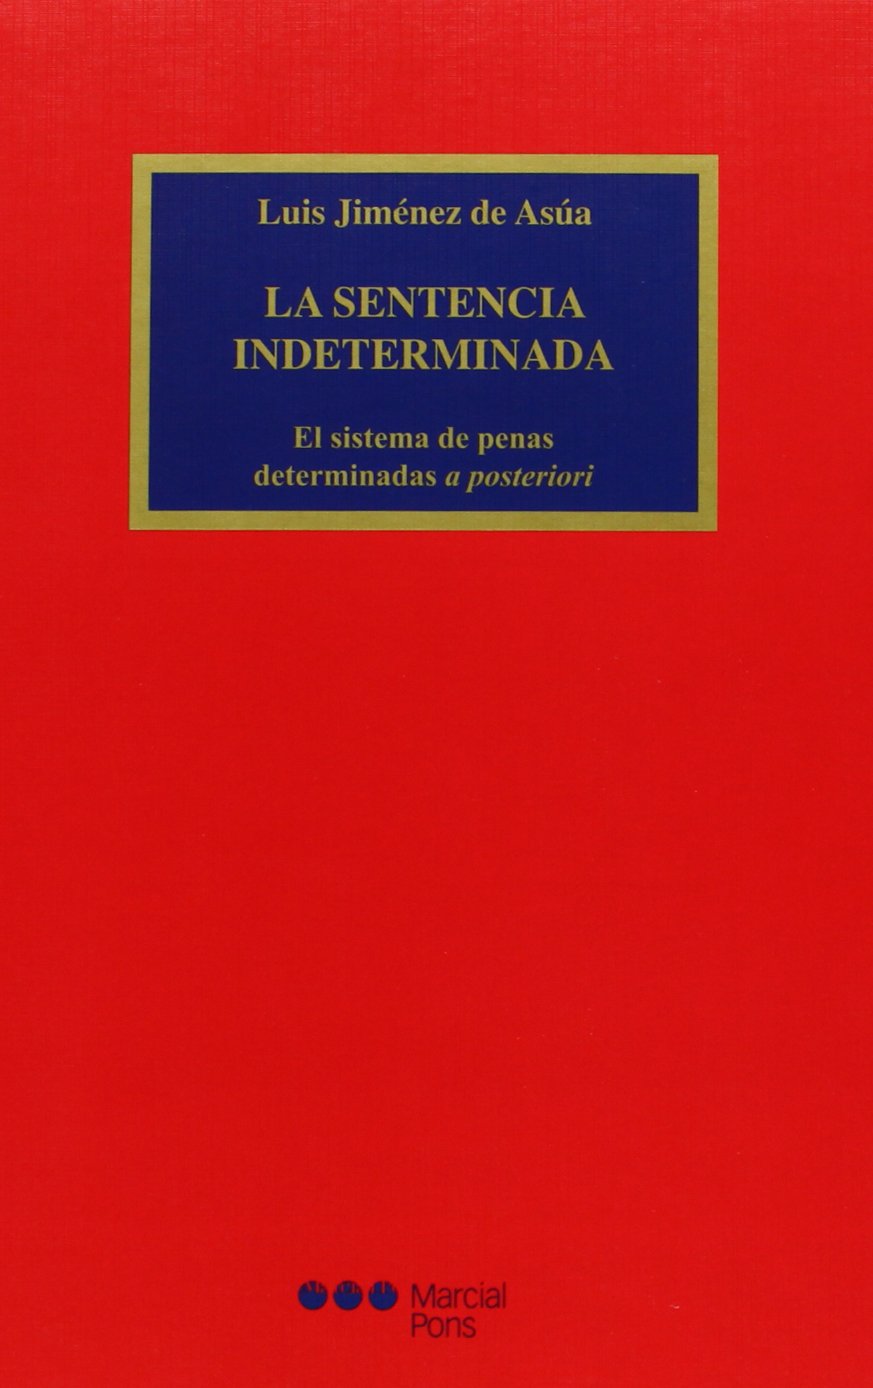 En 1913, Jiménez de Asúa obtuvo el título de Doctor. El texto de su tesis doctoral dio lugar a un volumen titulado La sentencia indeterminada